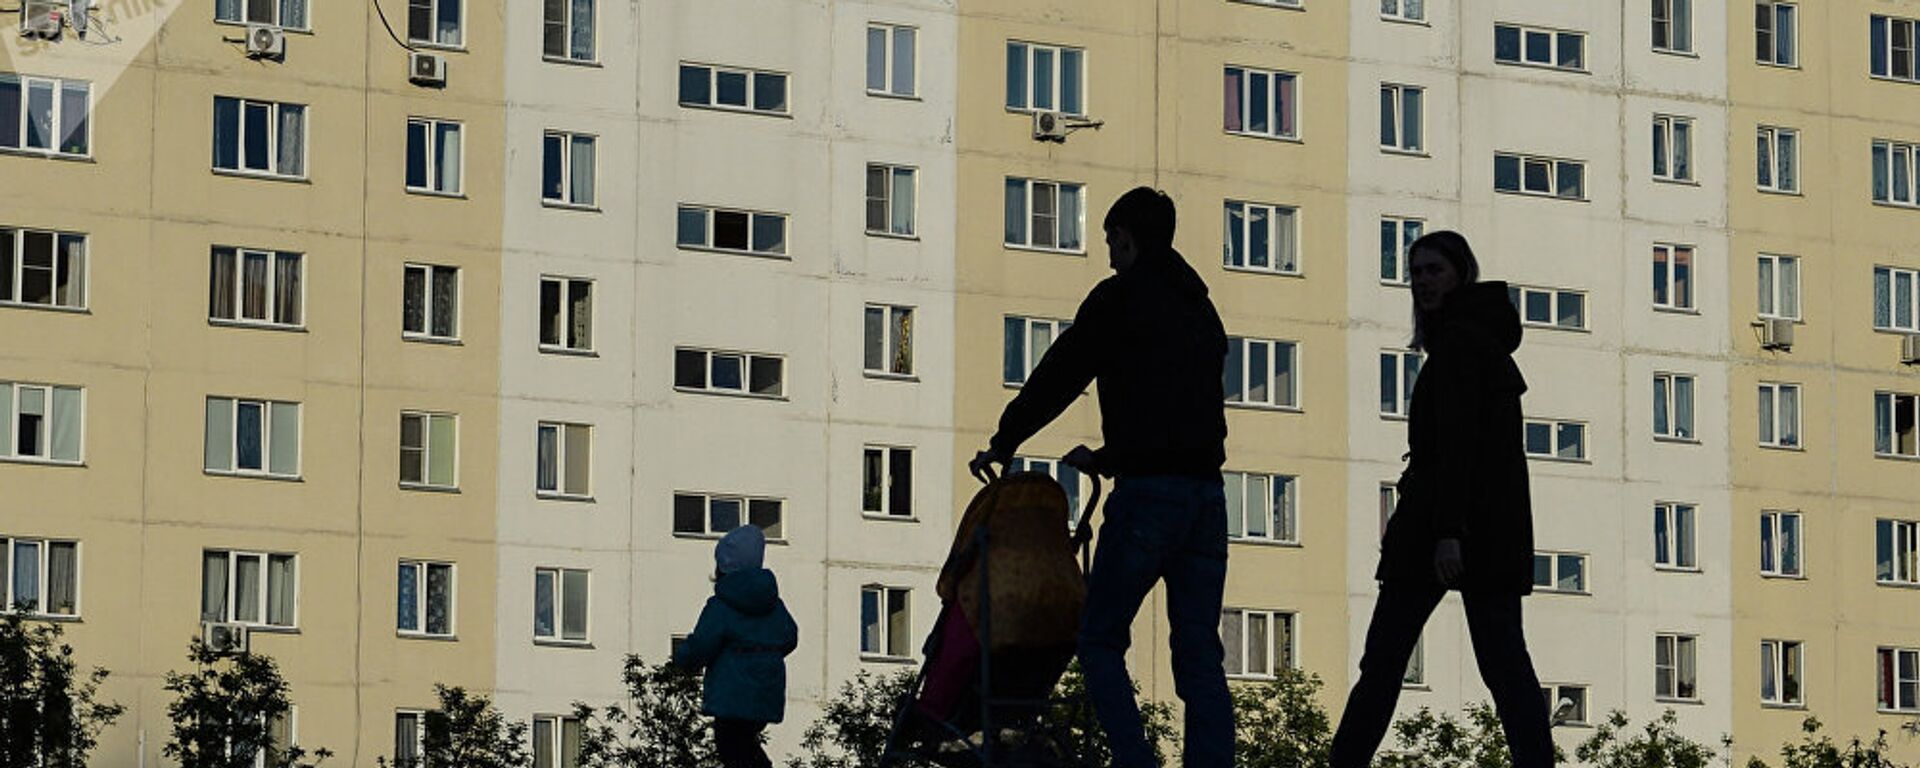 Мужчина и женщина с ребенком идут по тротуару. Архивное фото - Sputnik Тоҷикистон, 1920, 29.11.2021